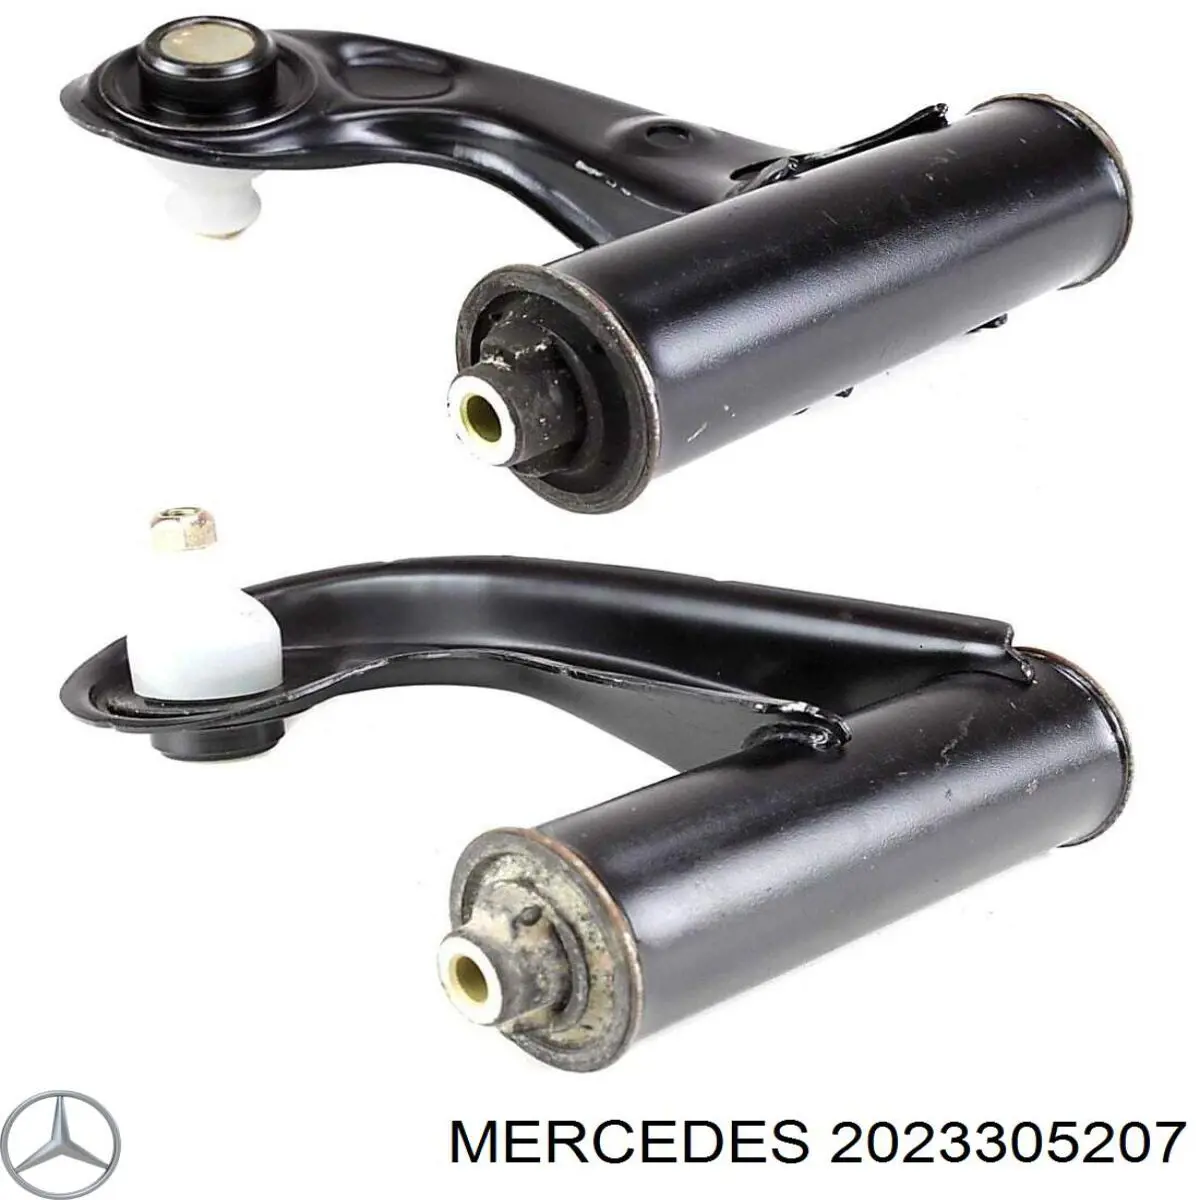 2023305207 Mercedes barra oscilante, suspensión de ruedas delantera, inferior derecha